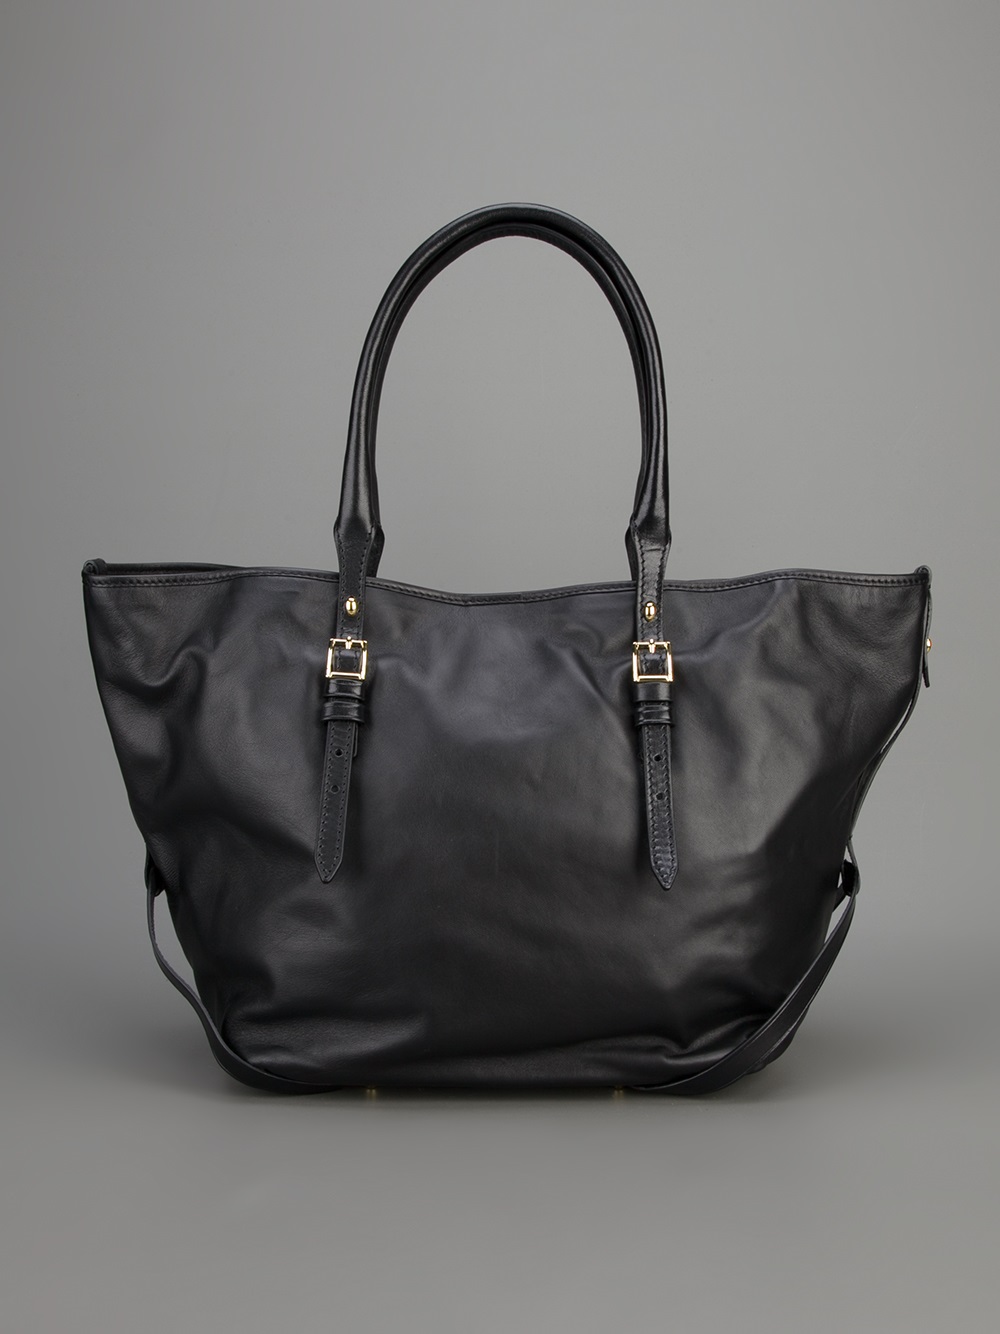 Lyst - Burberry Salisbury Tote Bag in Black